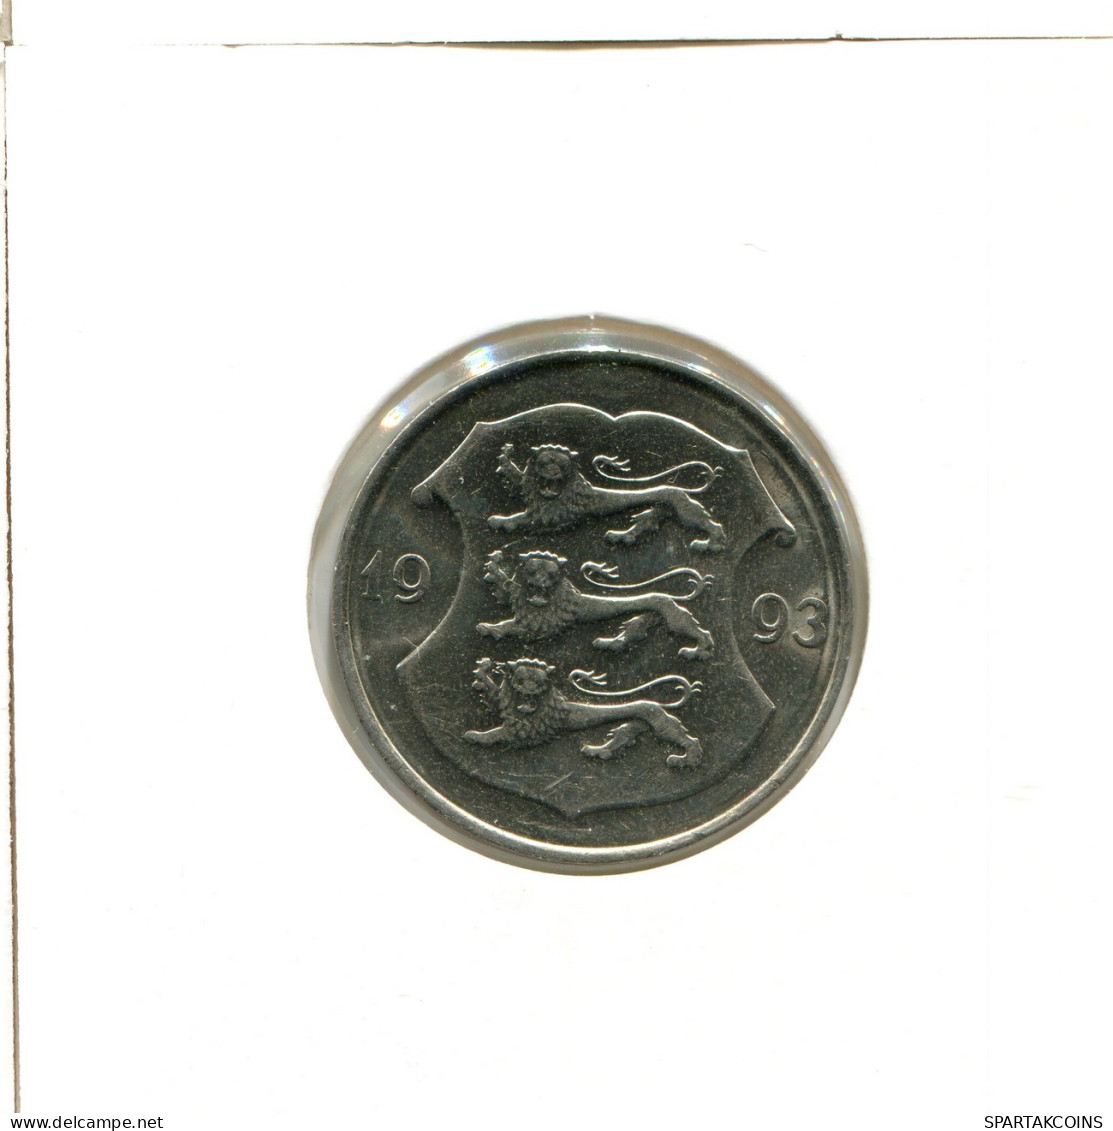 1 KROON 1993 ESTONIA Moneda #AX560.E - Estonie